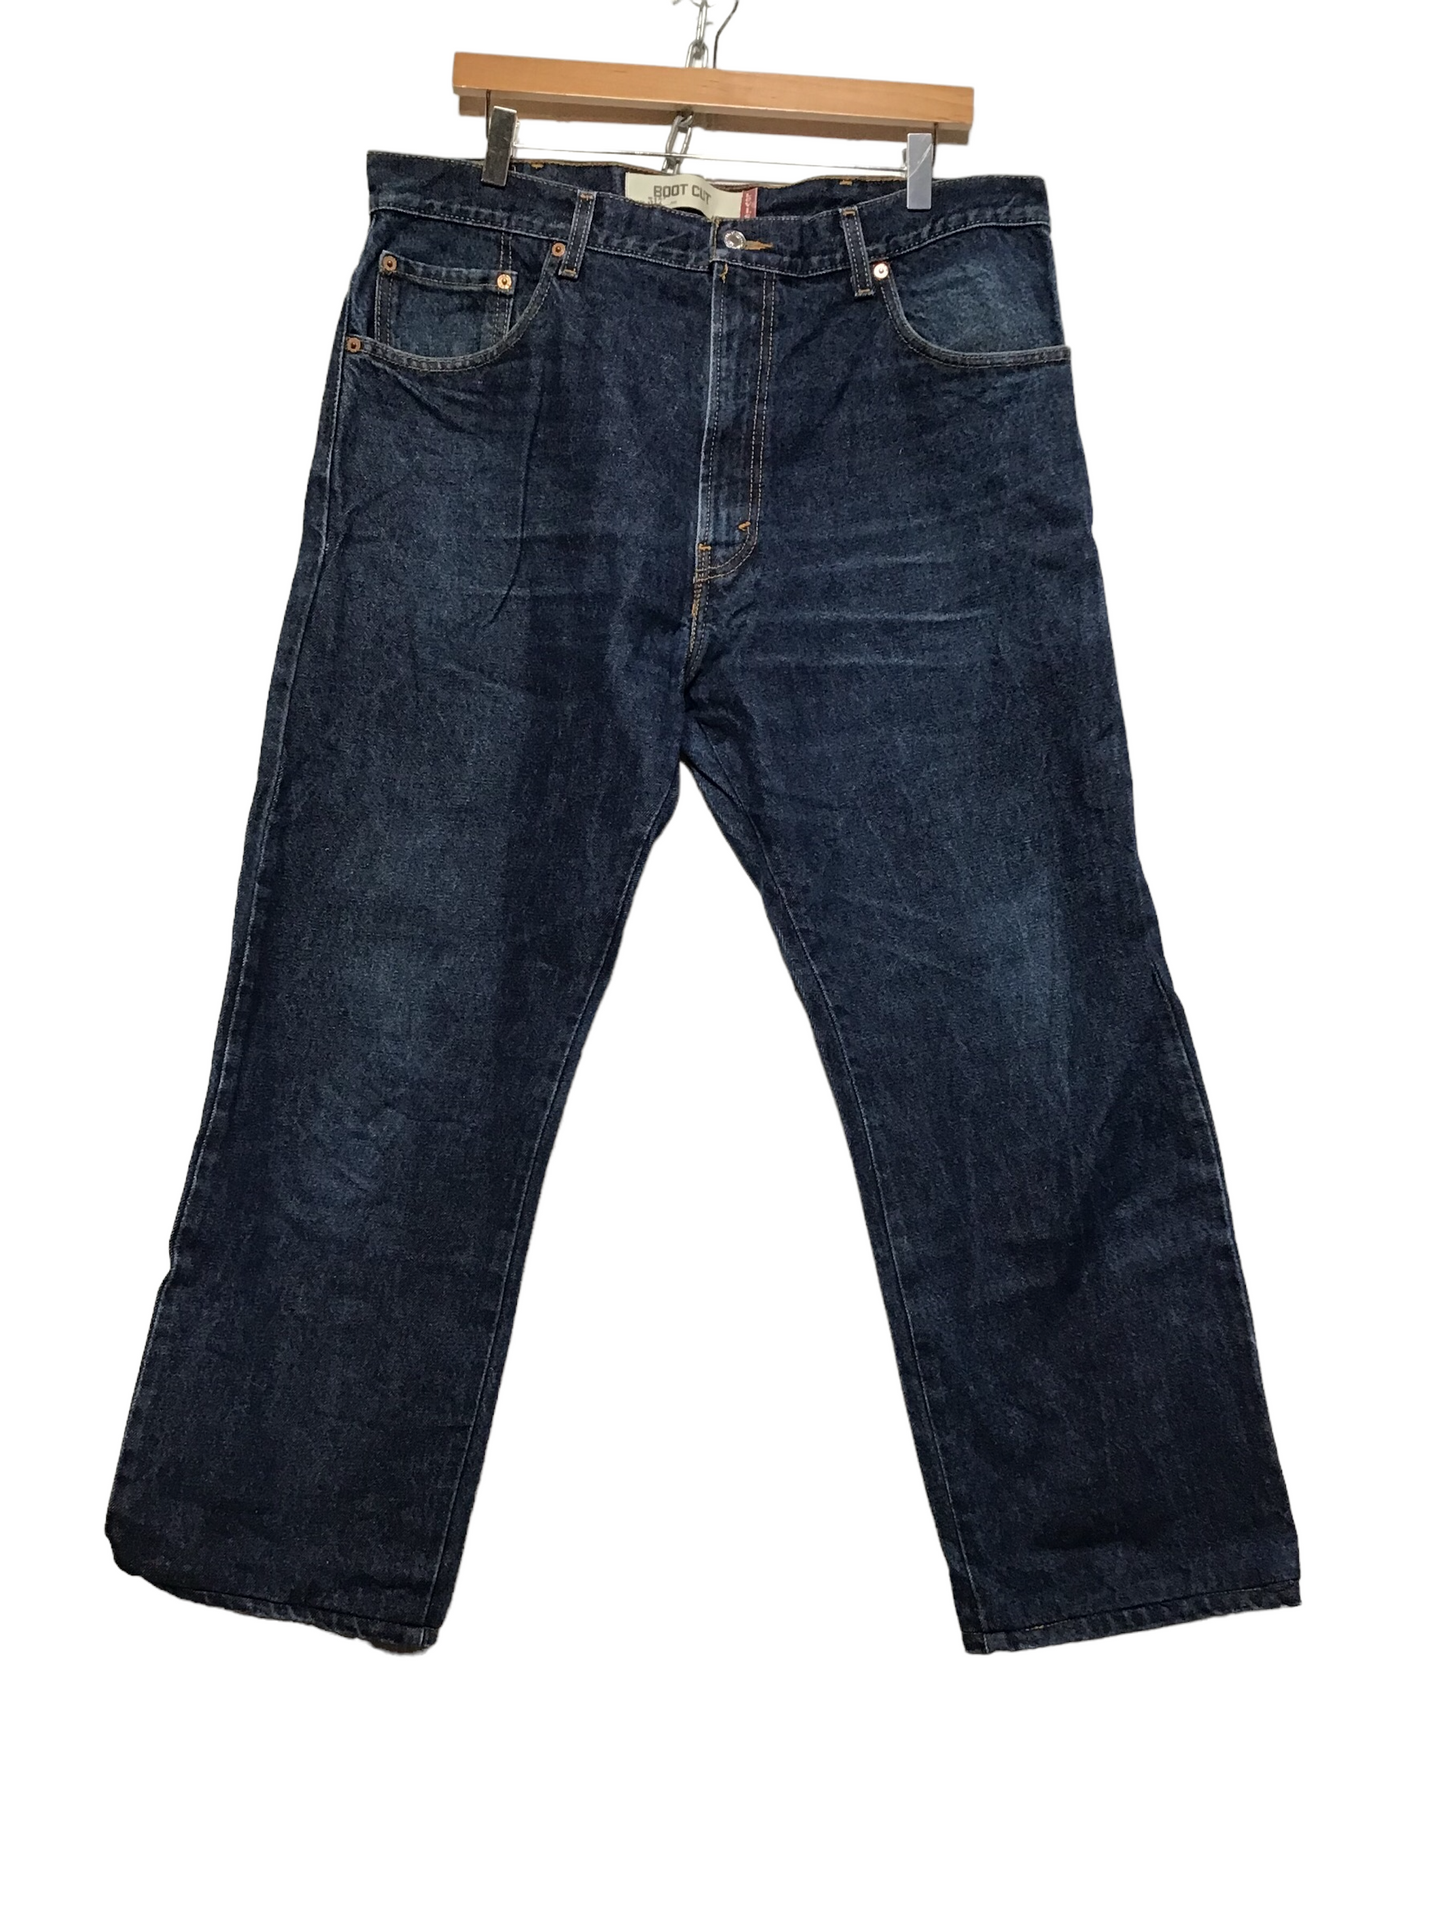 Levi 517 Jeans (38X28)